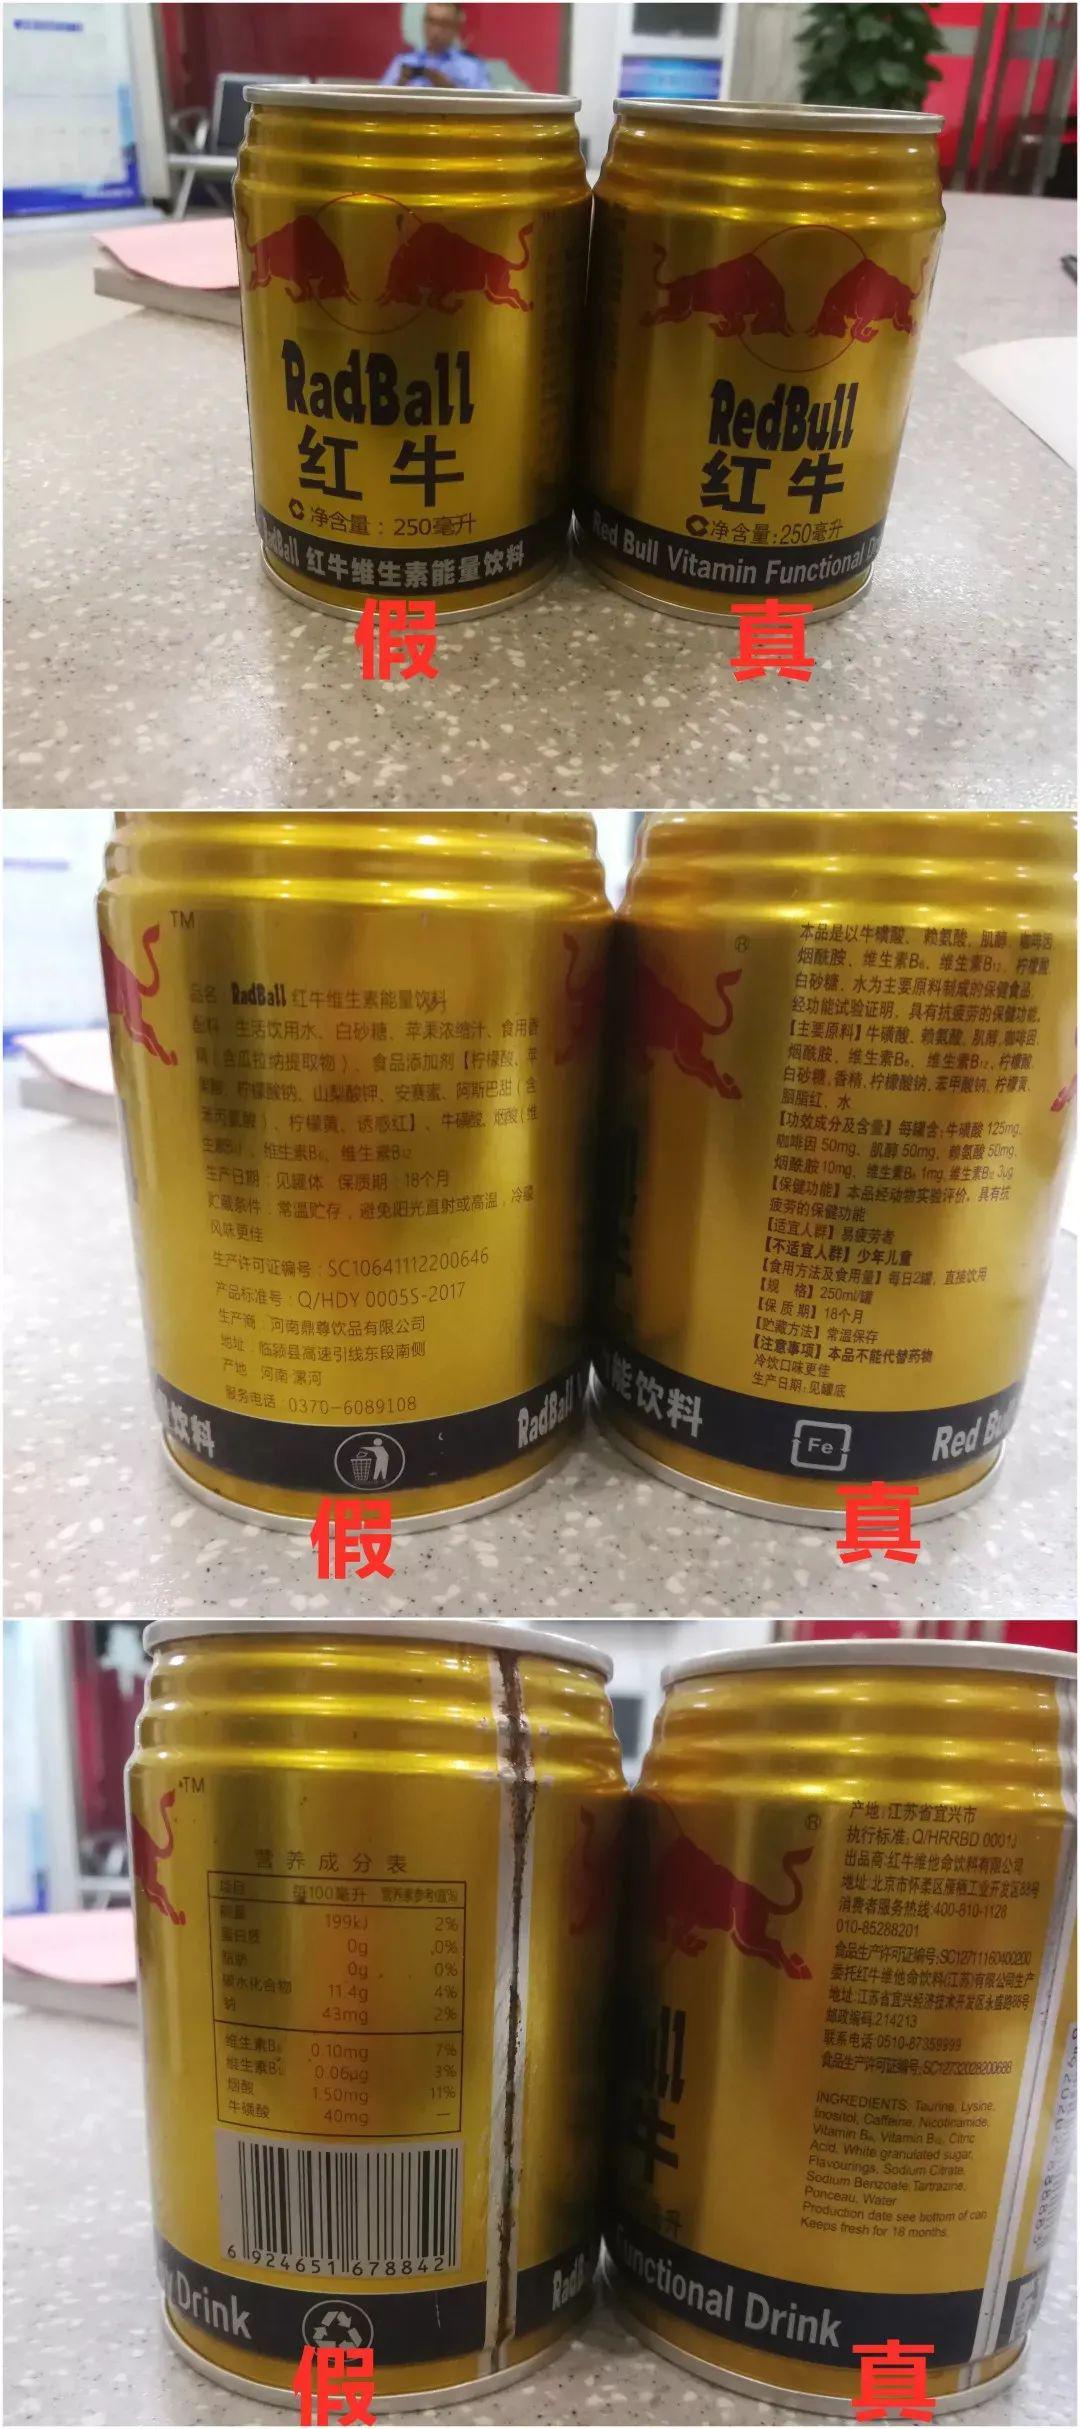 有人在清港辖区推销贩卖假冒的"红牛"饮料